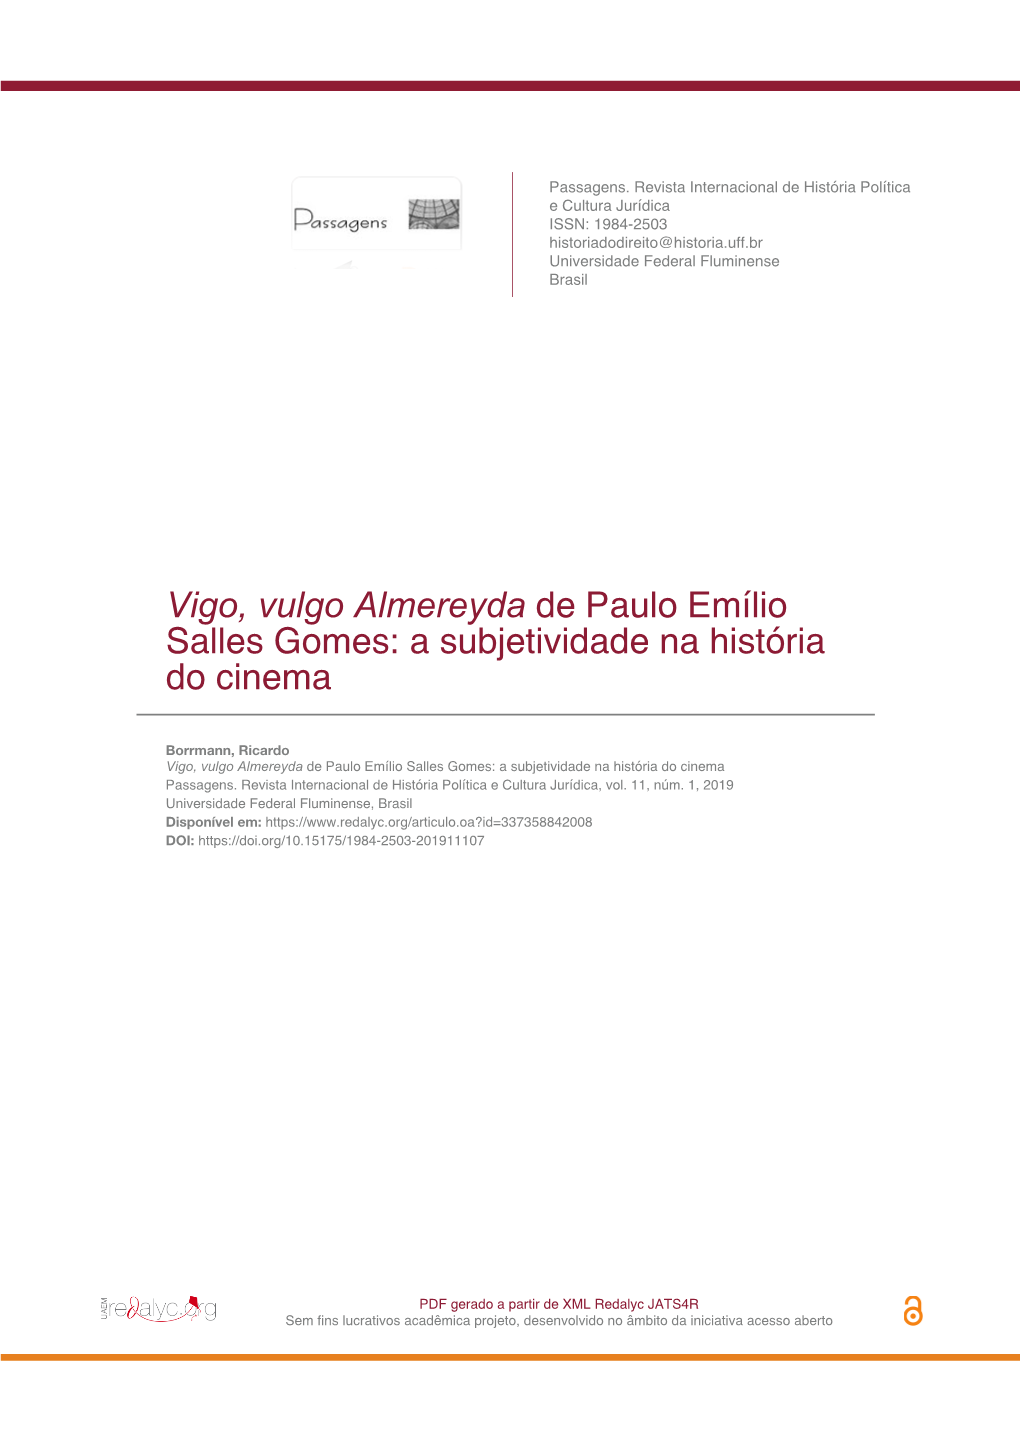 Vigo, Vulgo Almereyda De Paulo Emílio Salles Gomes: a Subjetividade Na História Do Cinema